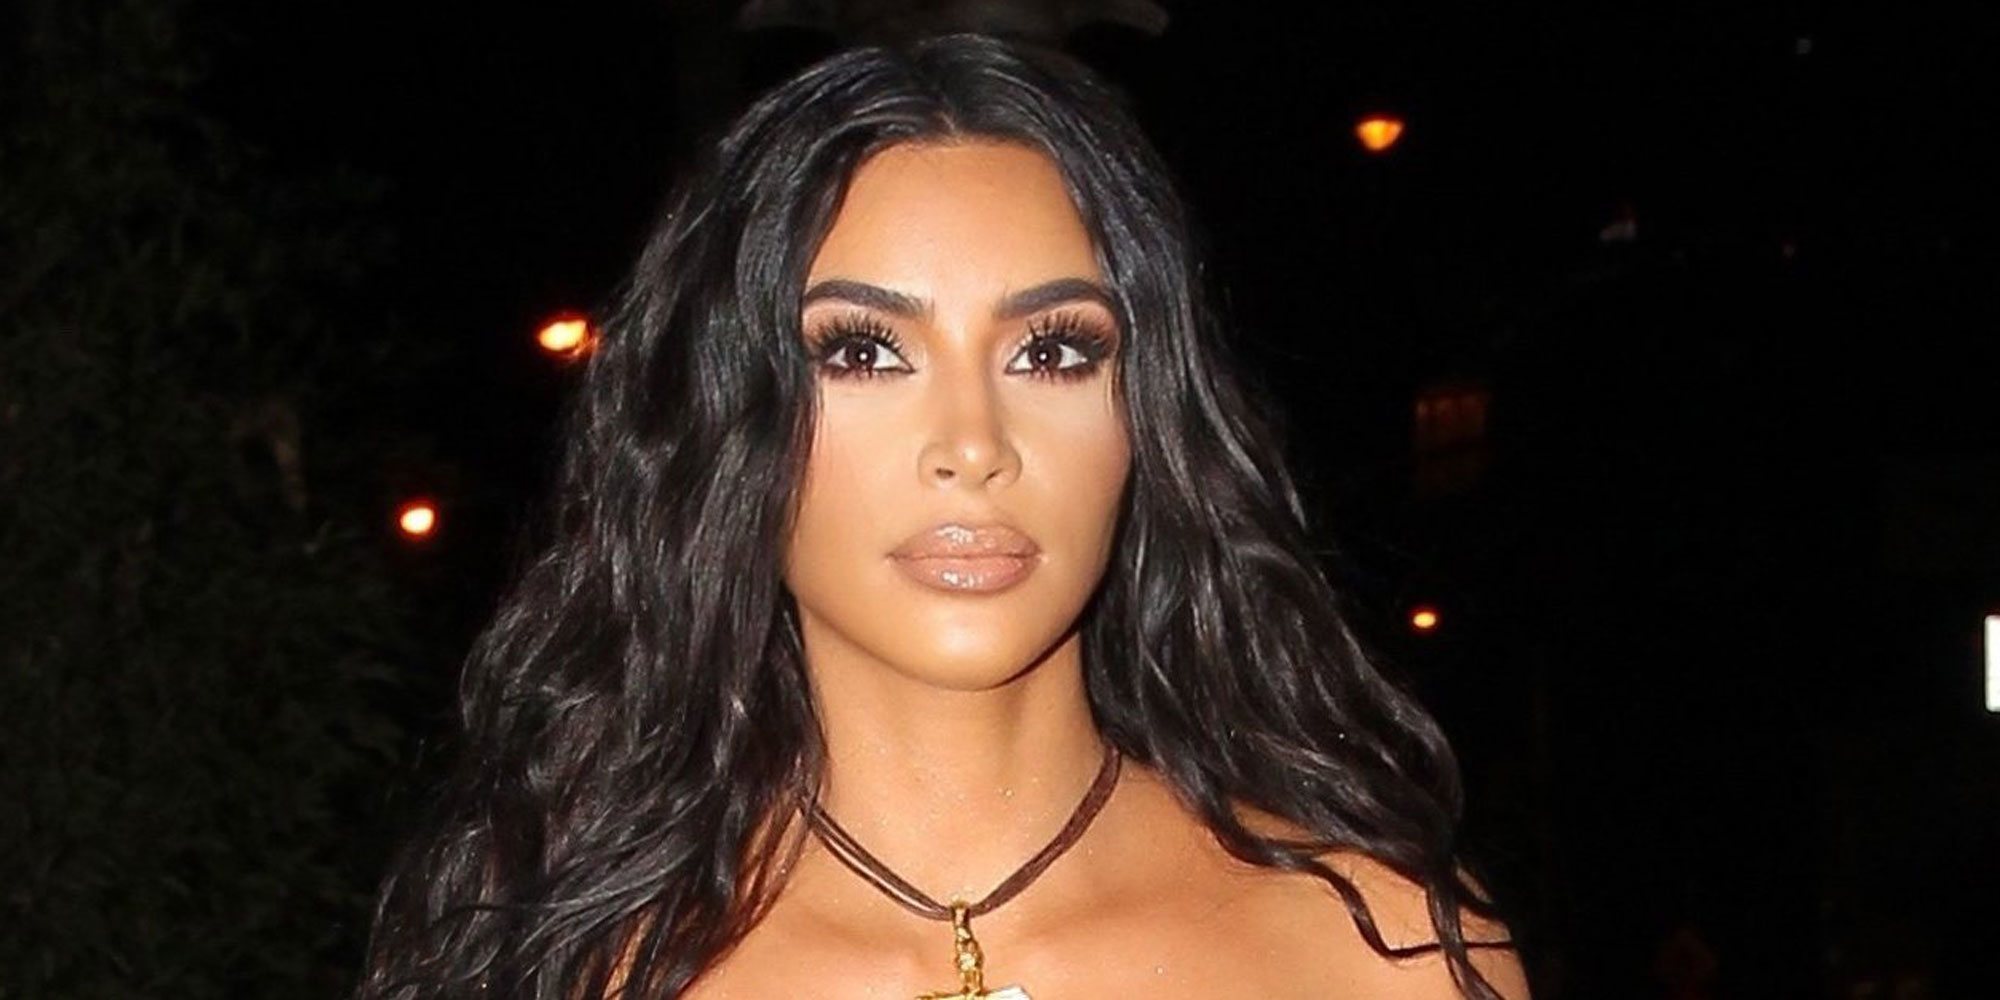 Kim Kardashian rompe su silencio para hablar del trastorno bipolar de Kanye West: "Pido compasión y empatía"